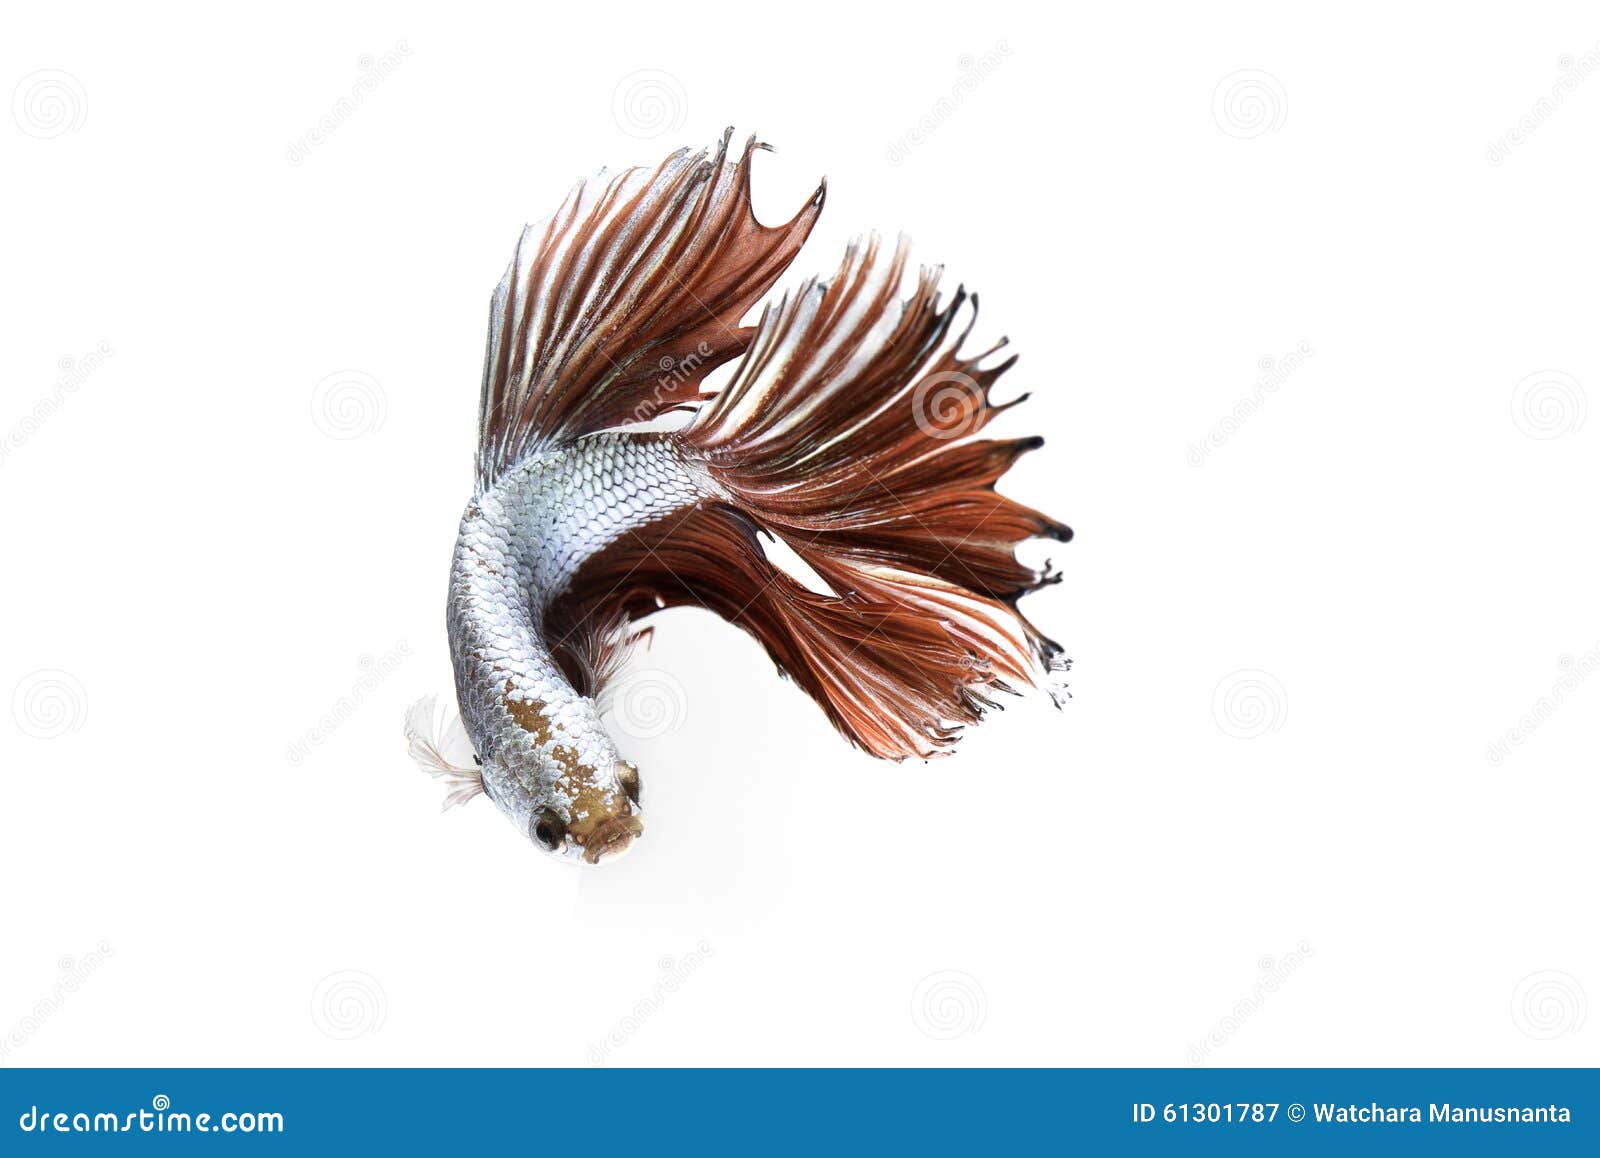 Siamesische kämpfende Fische auf weißem Hintergrund. Tanzen des Siamesischen Kampffisches auf weißem Hintergrund